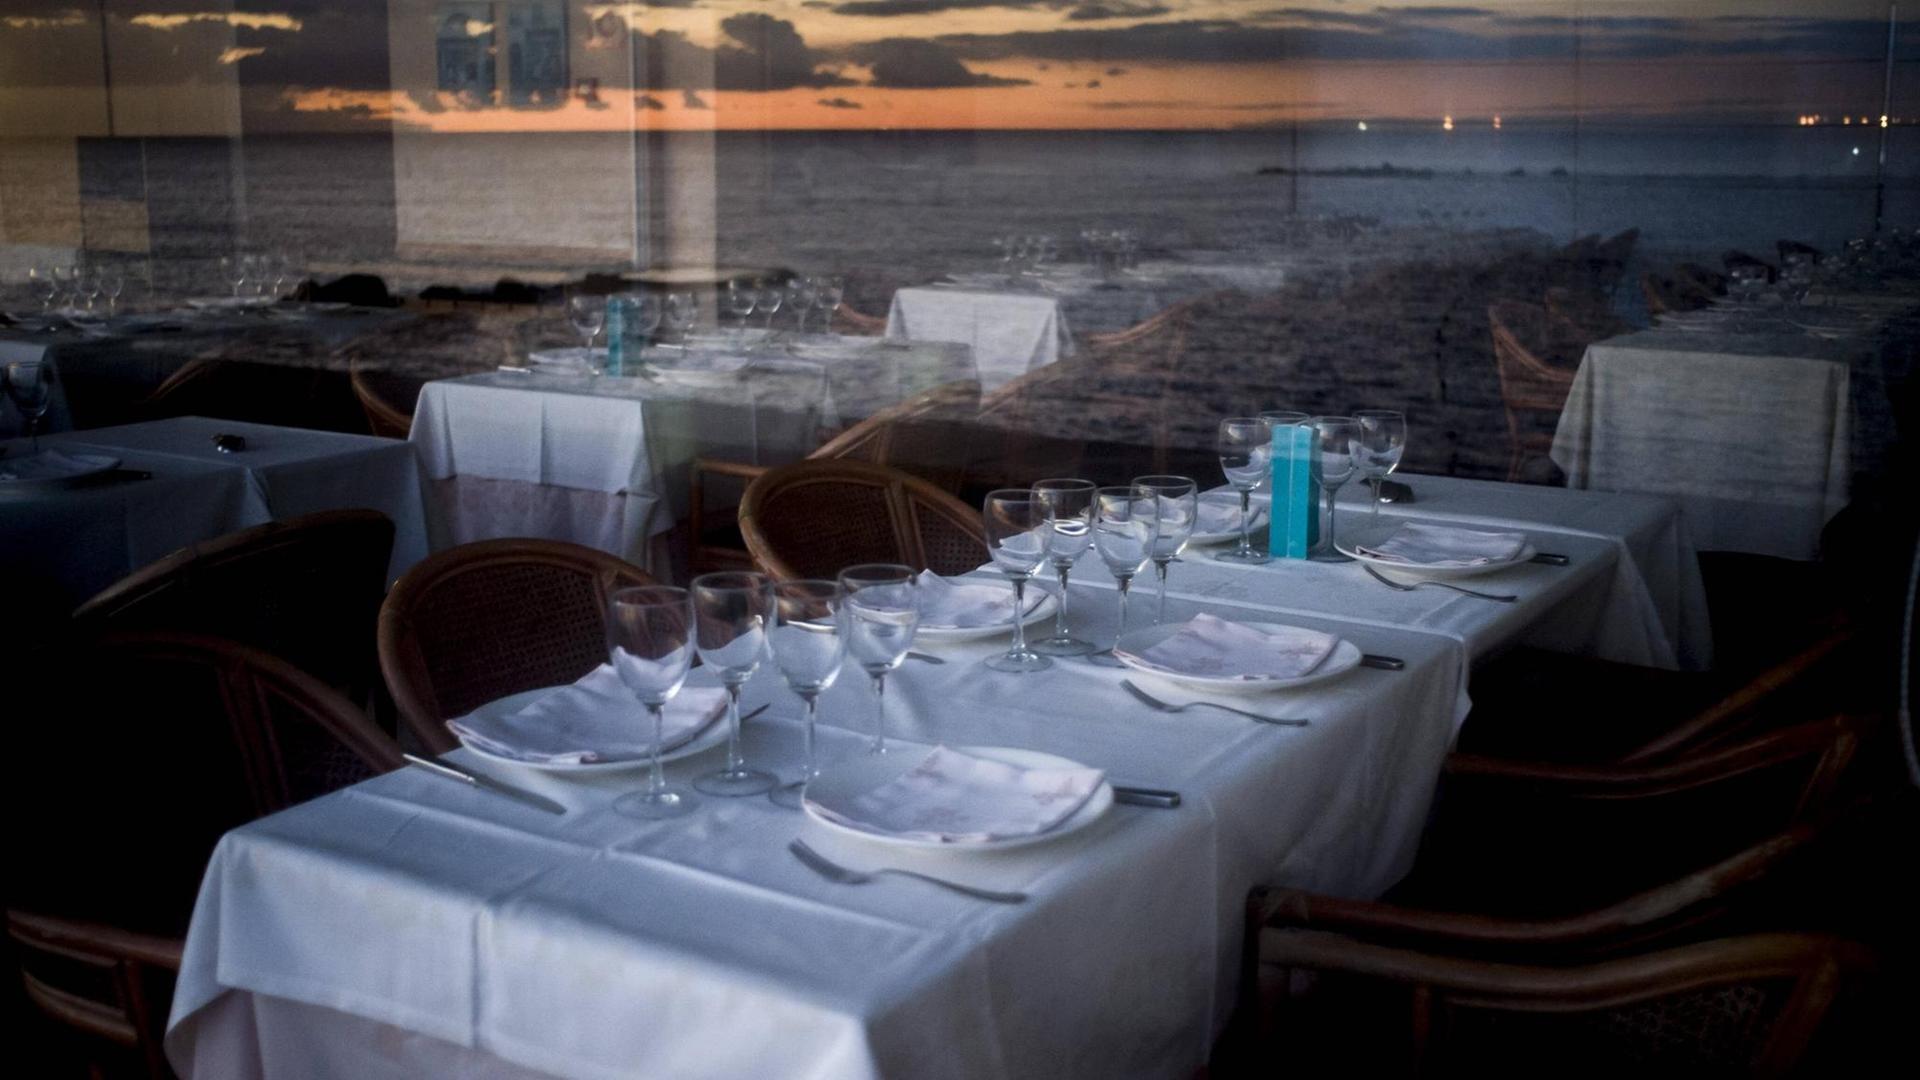 Leere Tische in einem Restaurant, in den Fensterscheiben spiegelt sich die Küste.